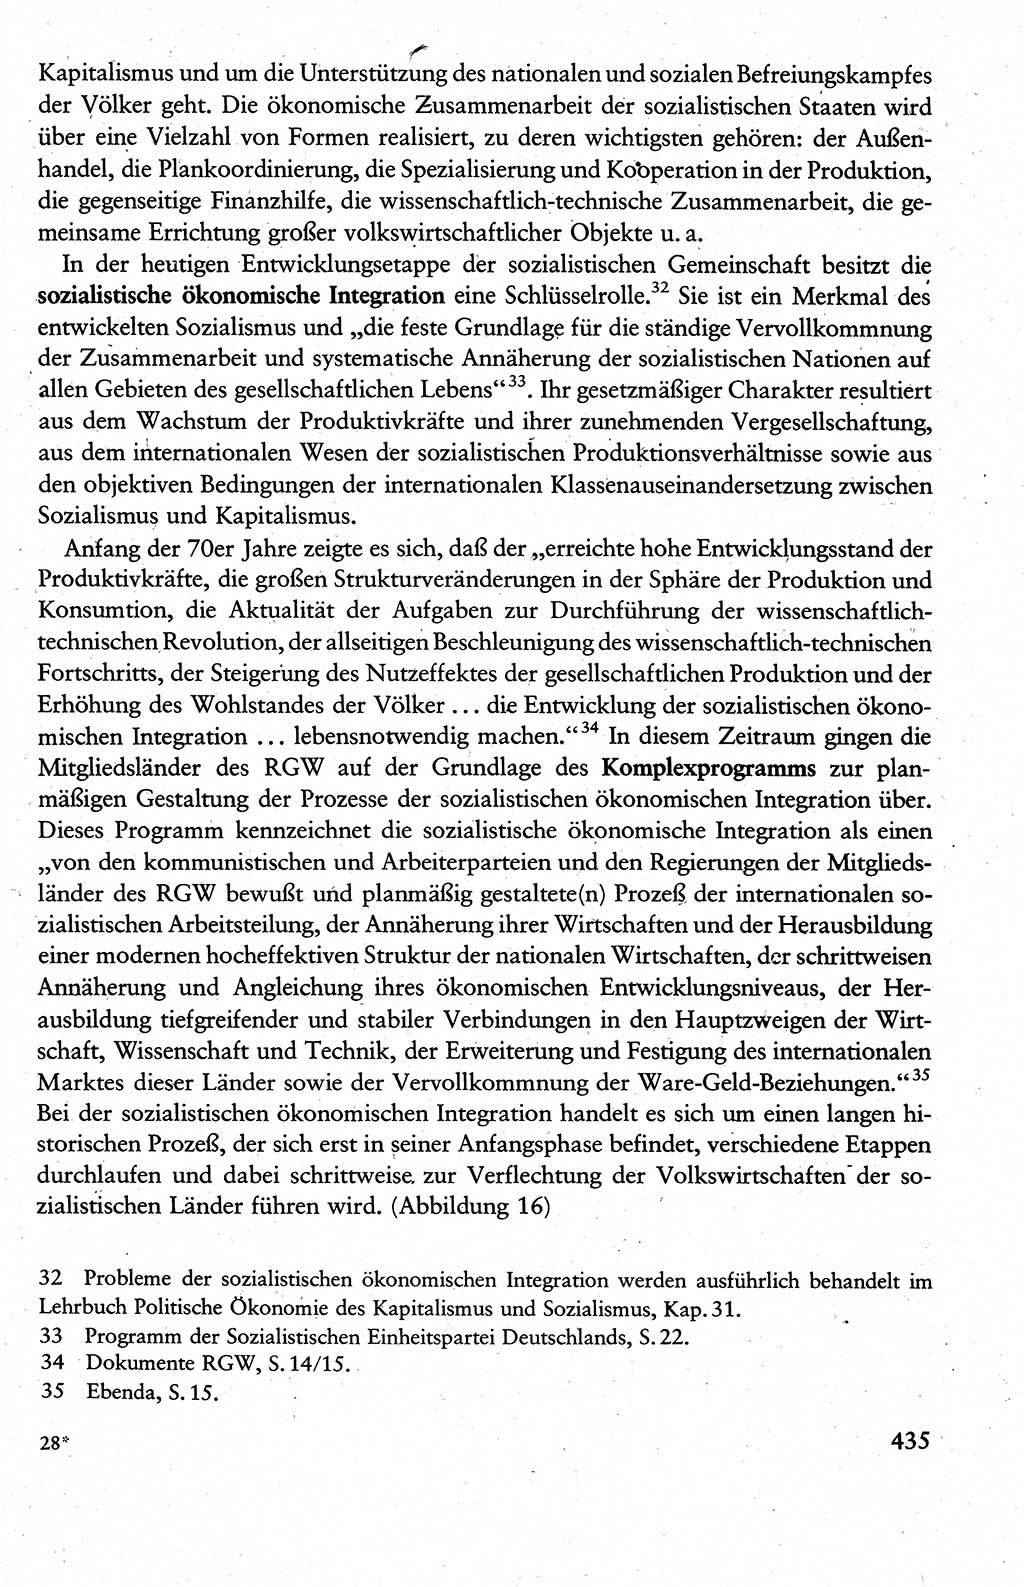 Wissenschaftlicher Kommunismus [Deutsche Demokratische Republik (DDR)], Lehrbuch für das marxistisch-leninistische Grundlagenstudium 1983, Seite 435 (Wiss. Komm. DDR Lb. 1983, S. 435)